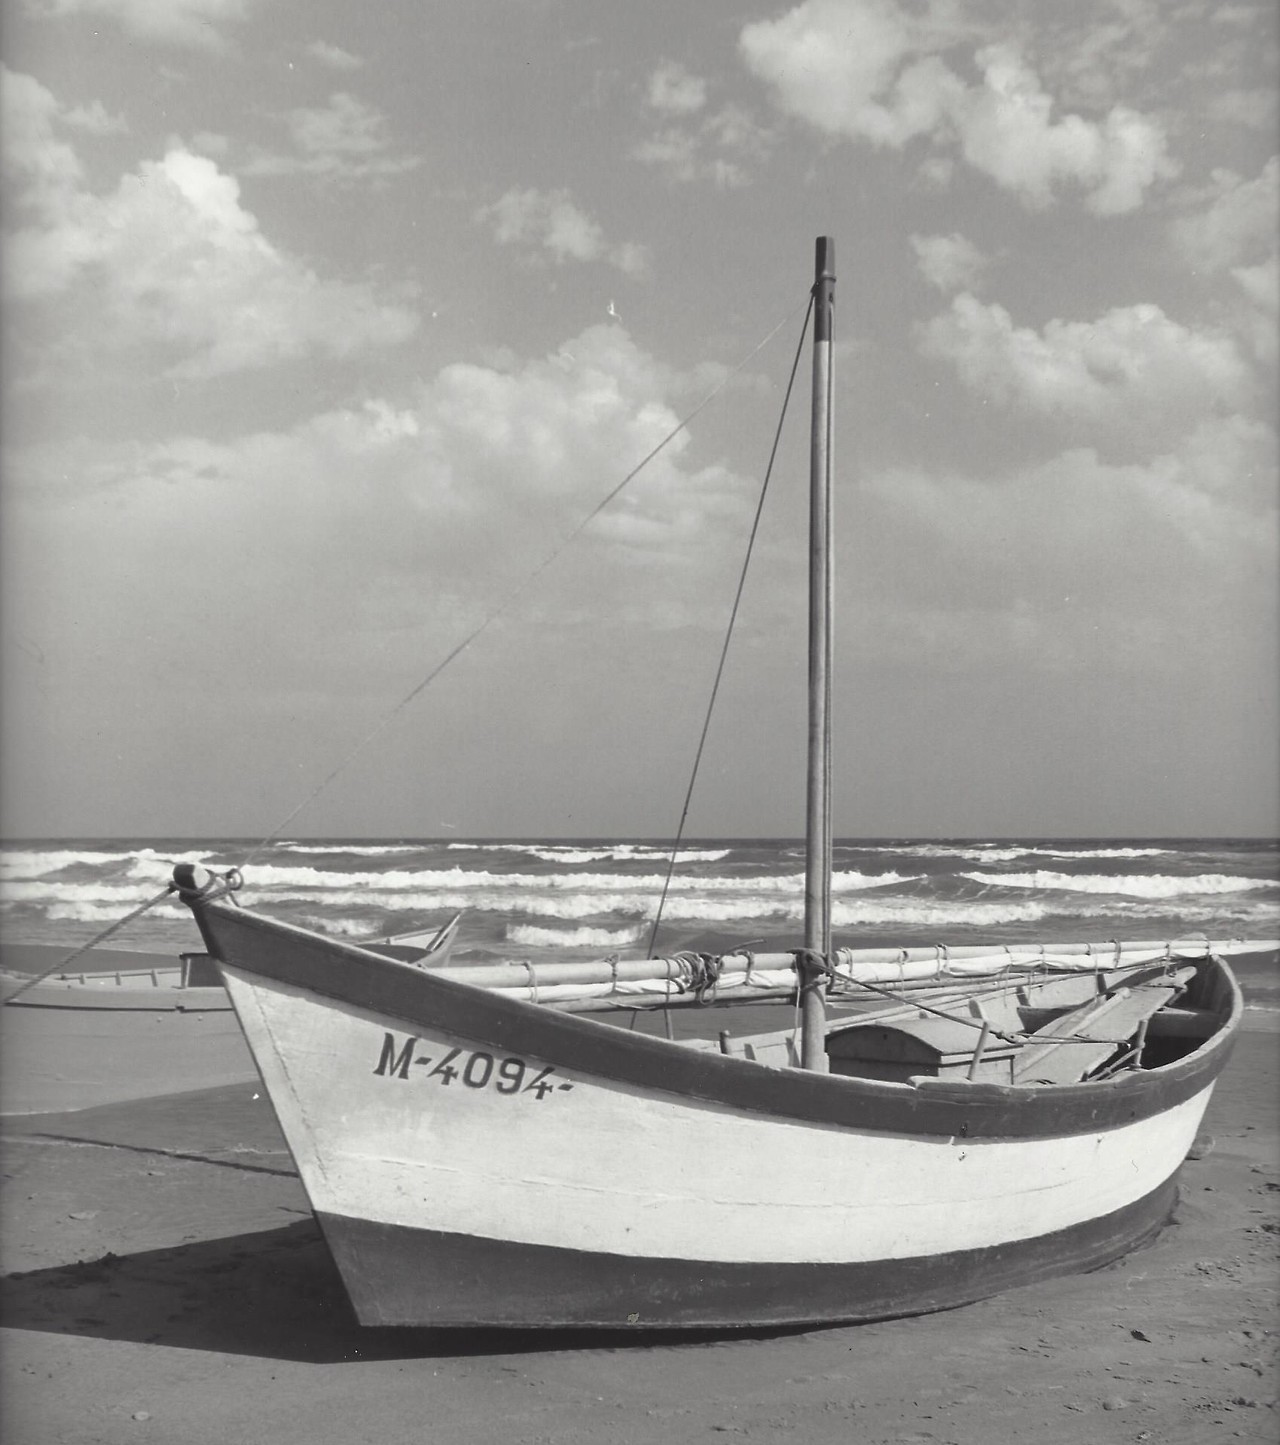 Рыбацкая лодка на пляже, Франция, 1950-е. Фотограф Кис Шерер